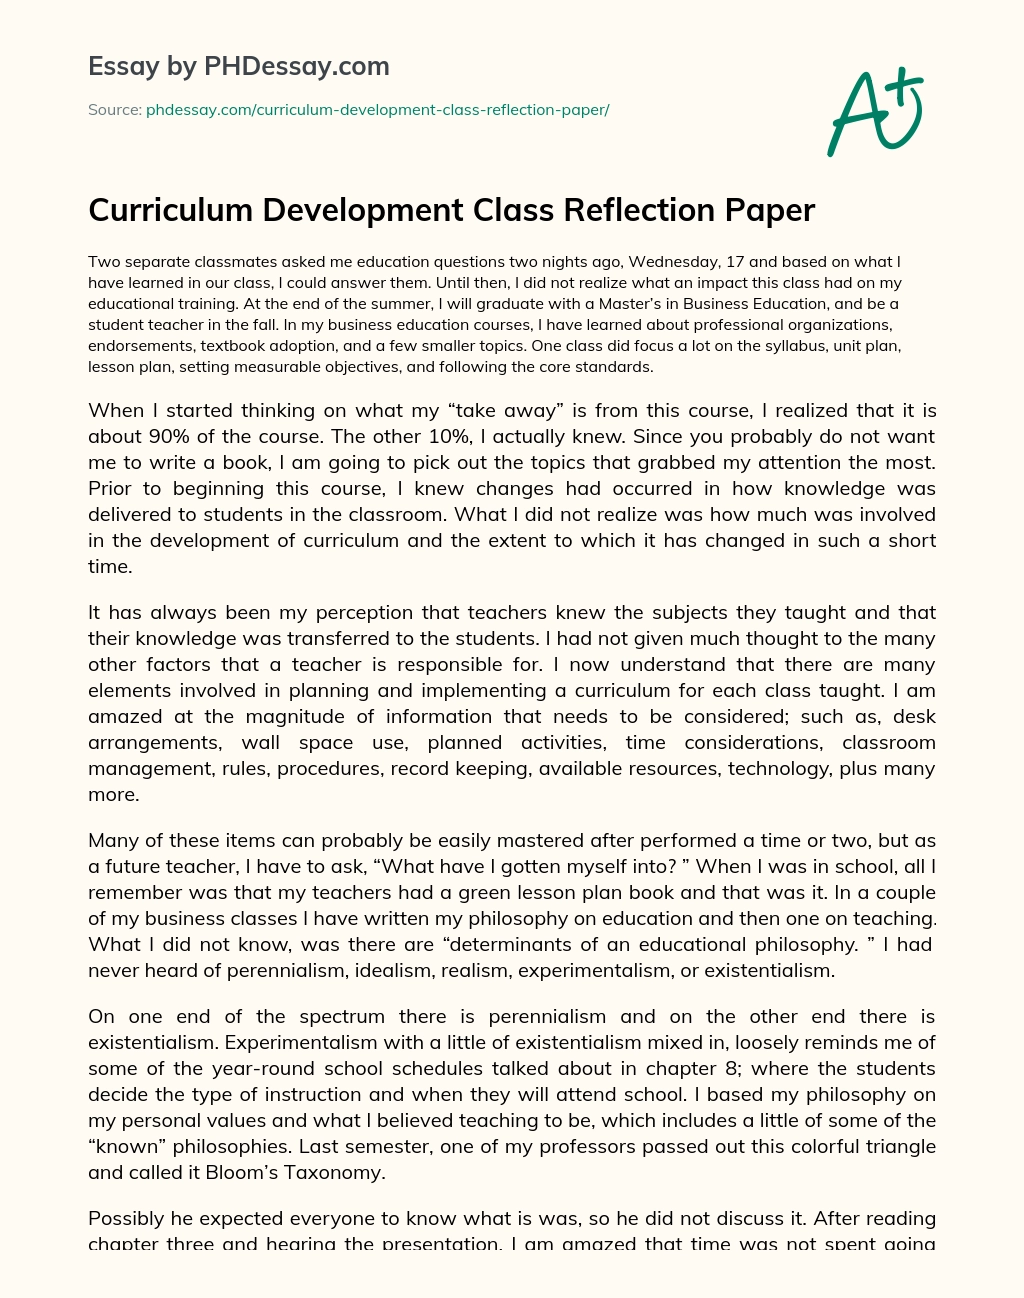 Curriculum Development Class Reflection Paper essay